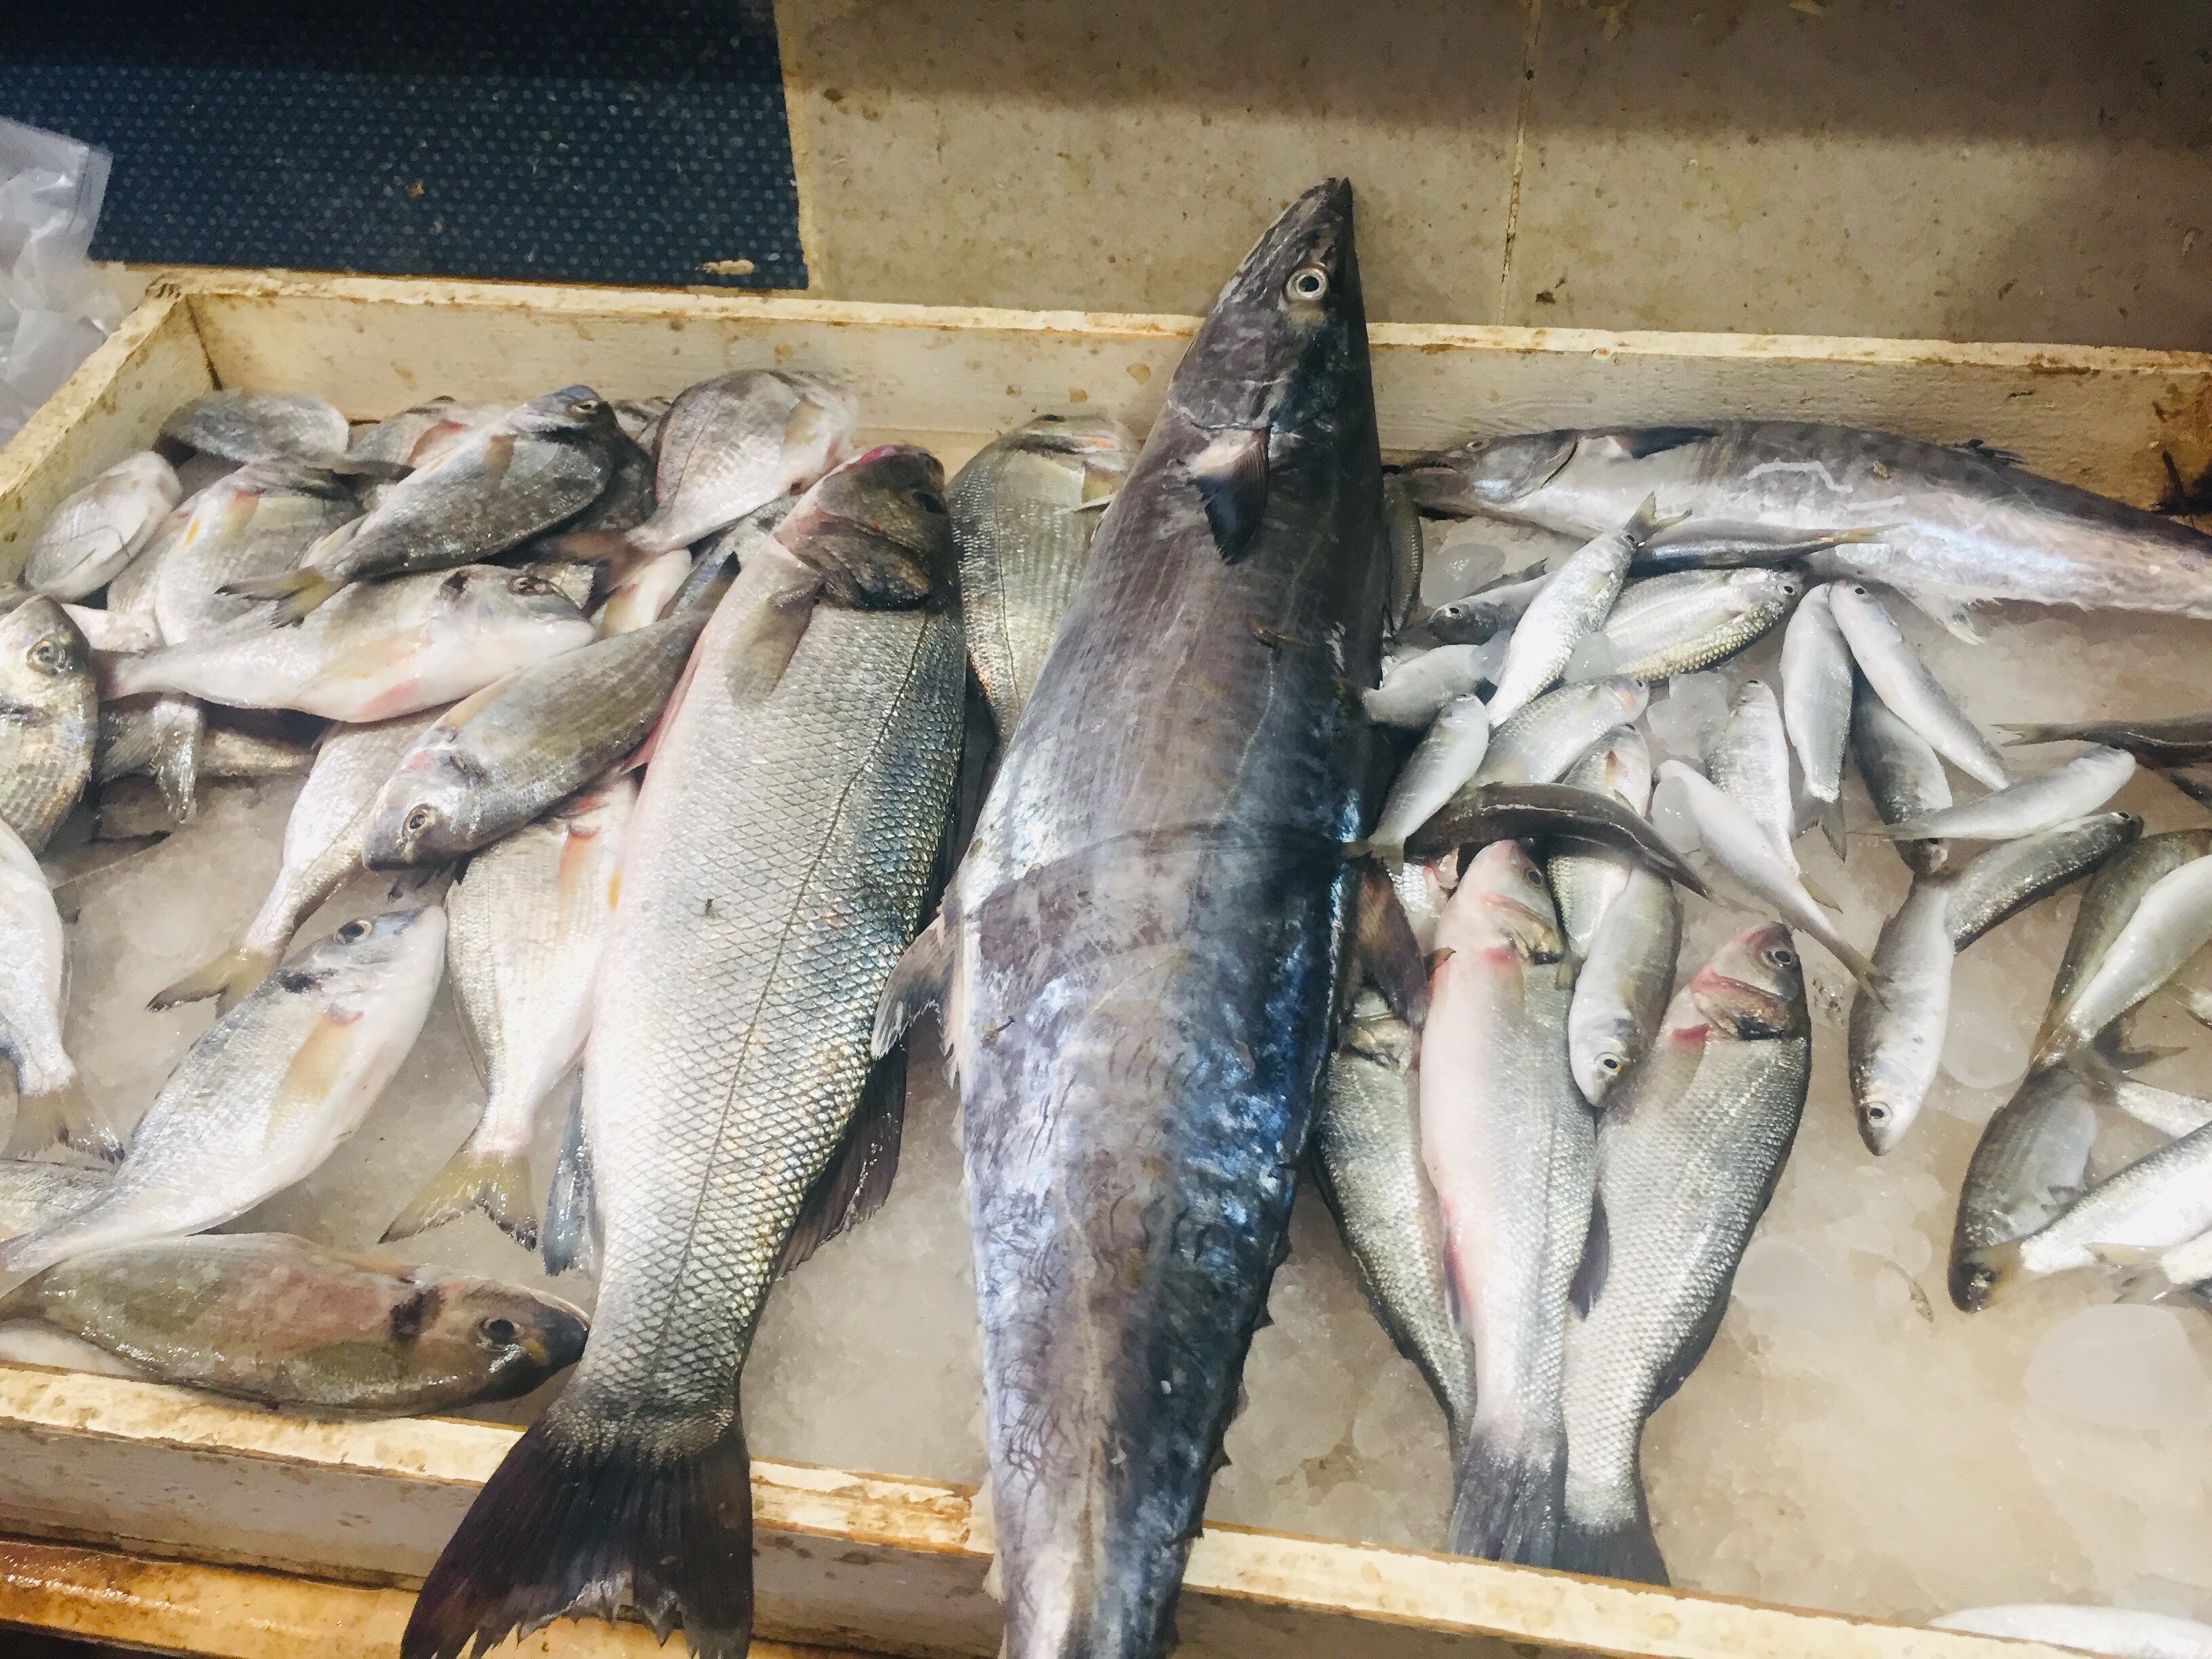  سوق بورسعيد للأسماك بمحافظة الإسماعيلية (3)